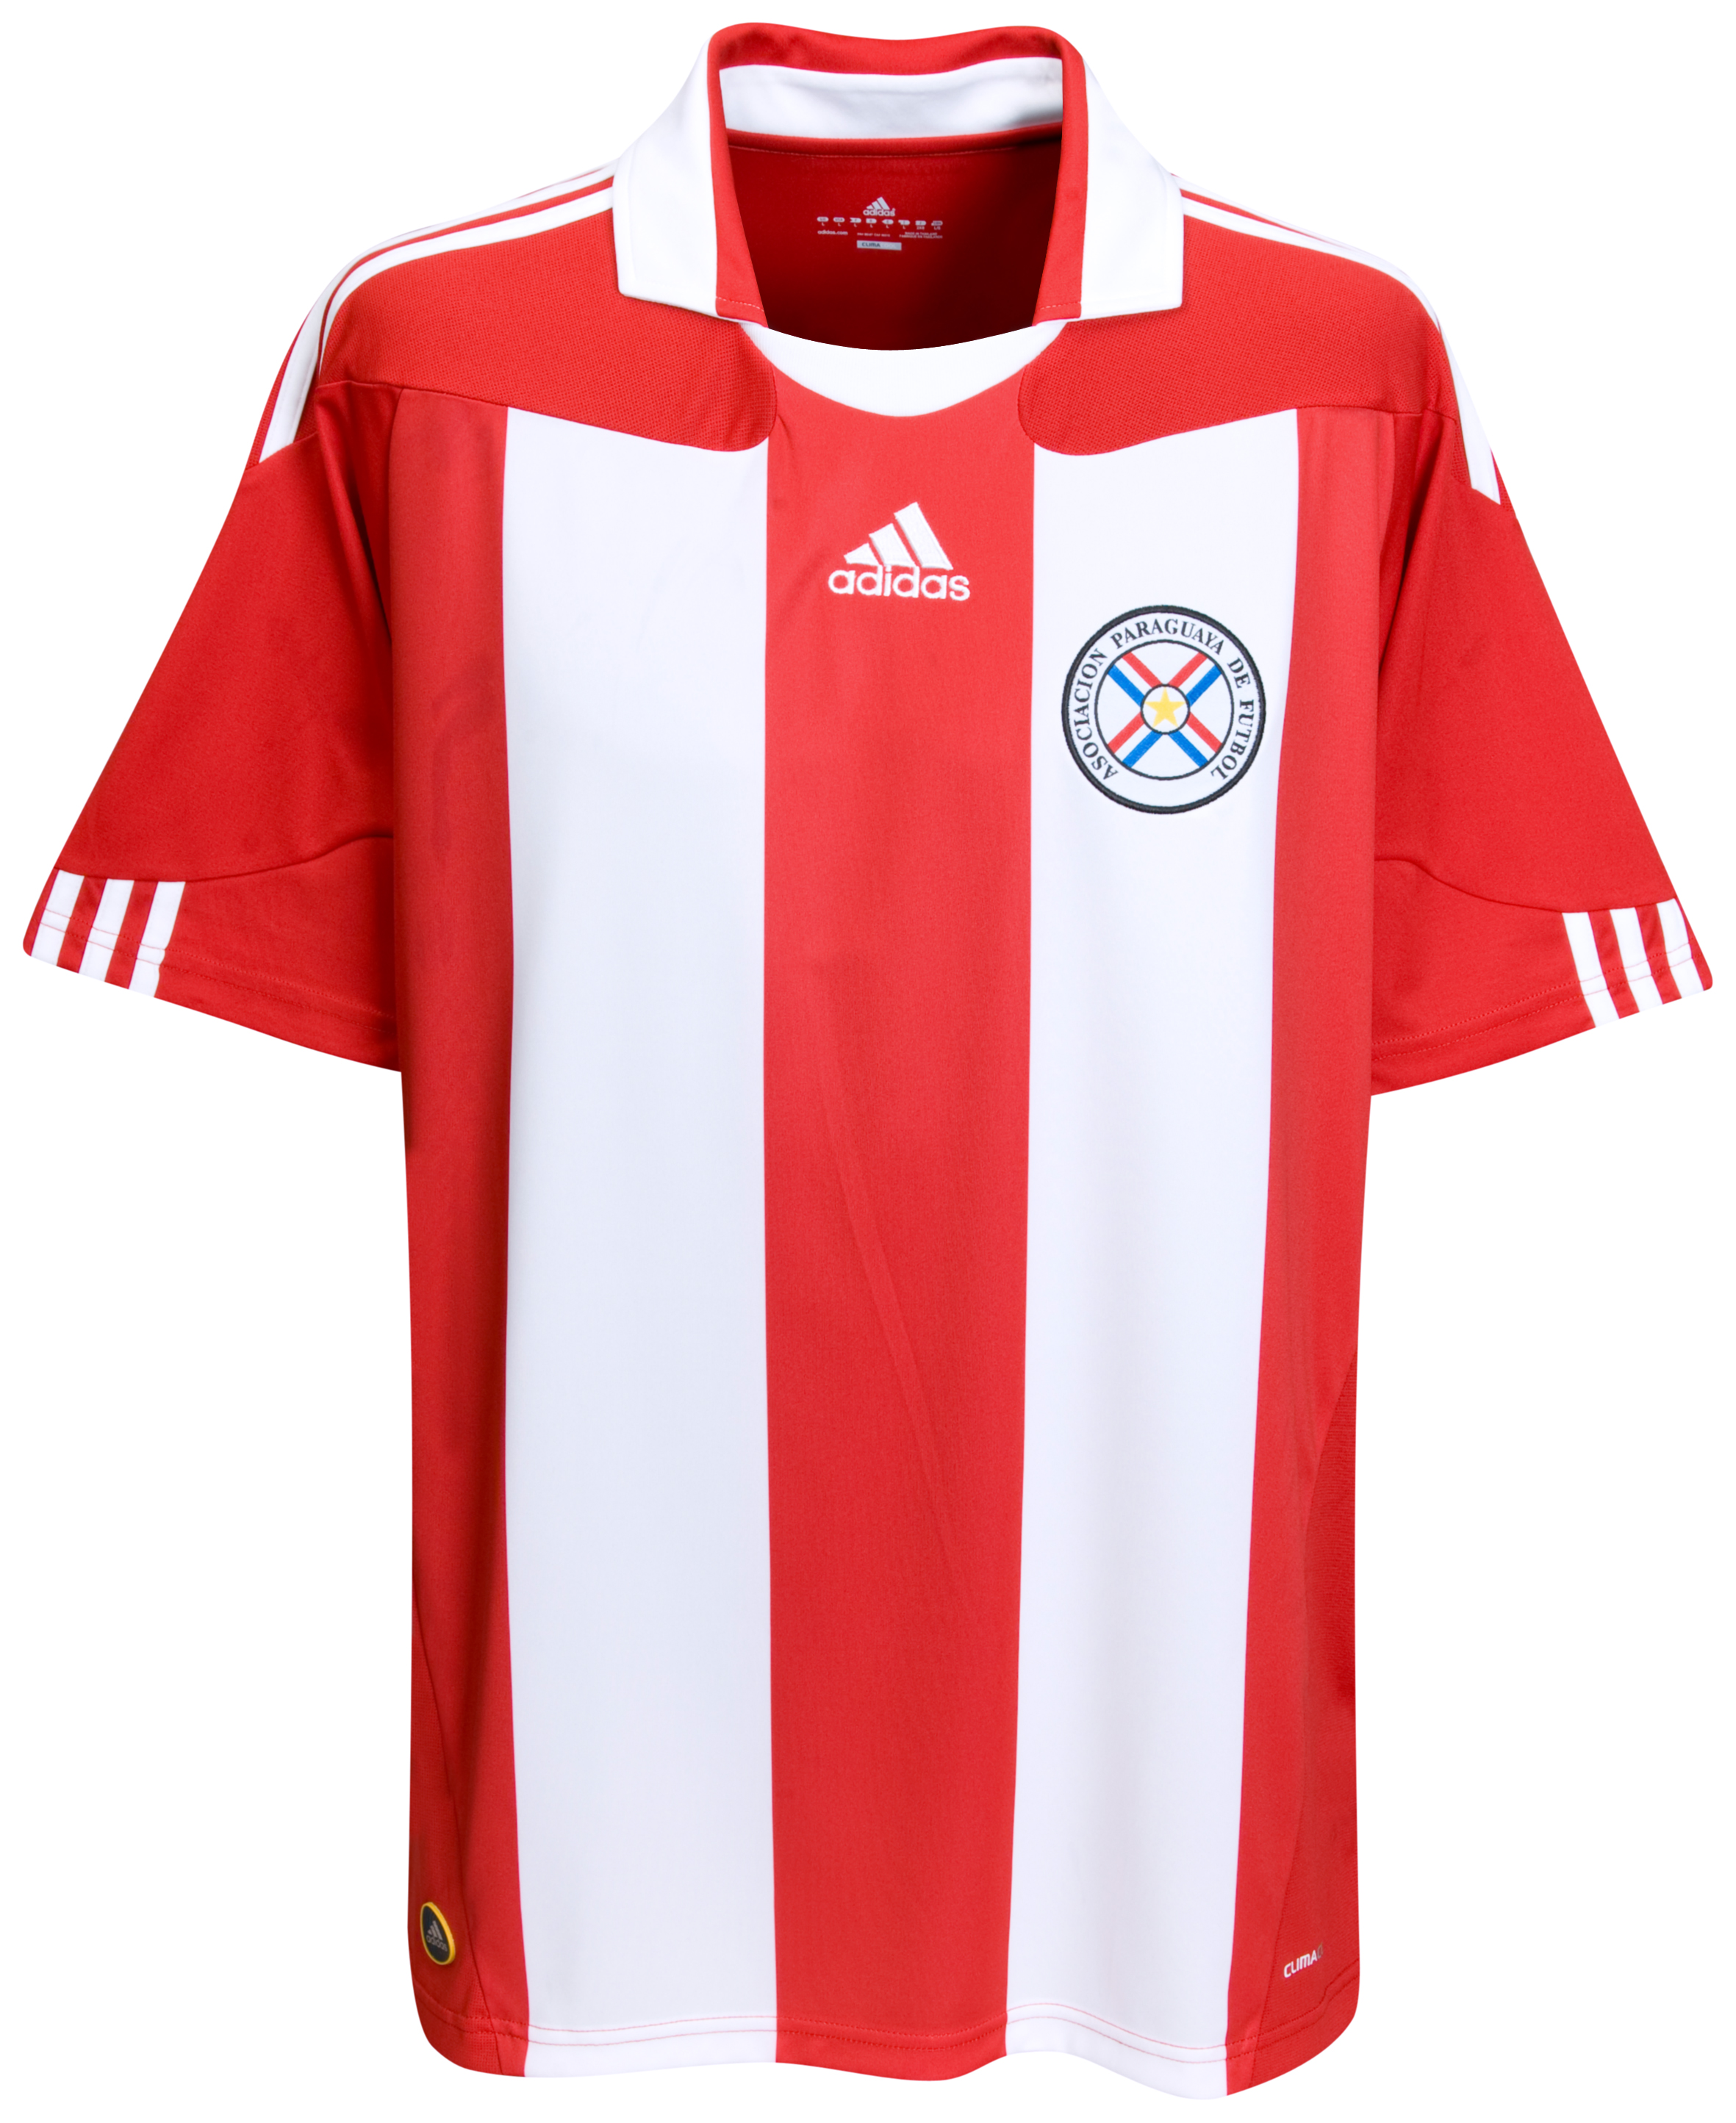 الملابس الخاصة بالمنتخبات في كأس العالم (جنوب أفريقيا 2010) Kb-63747